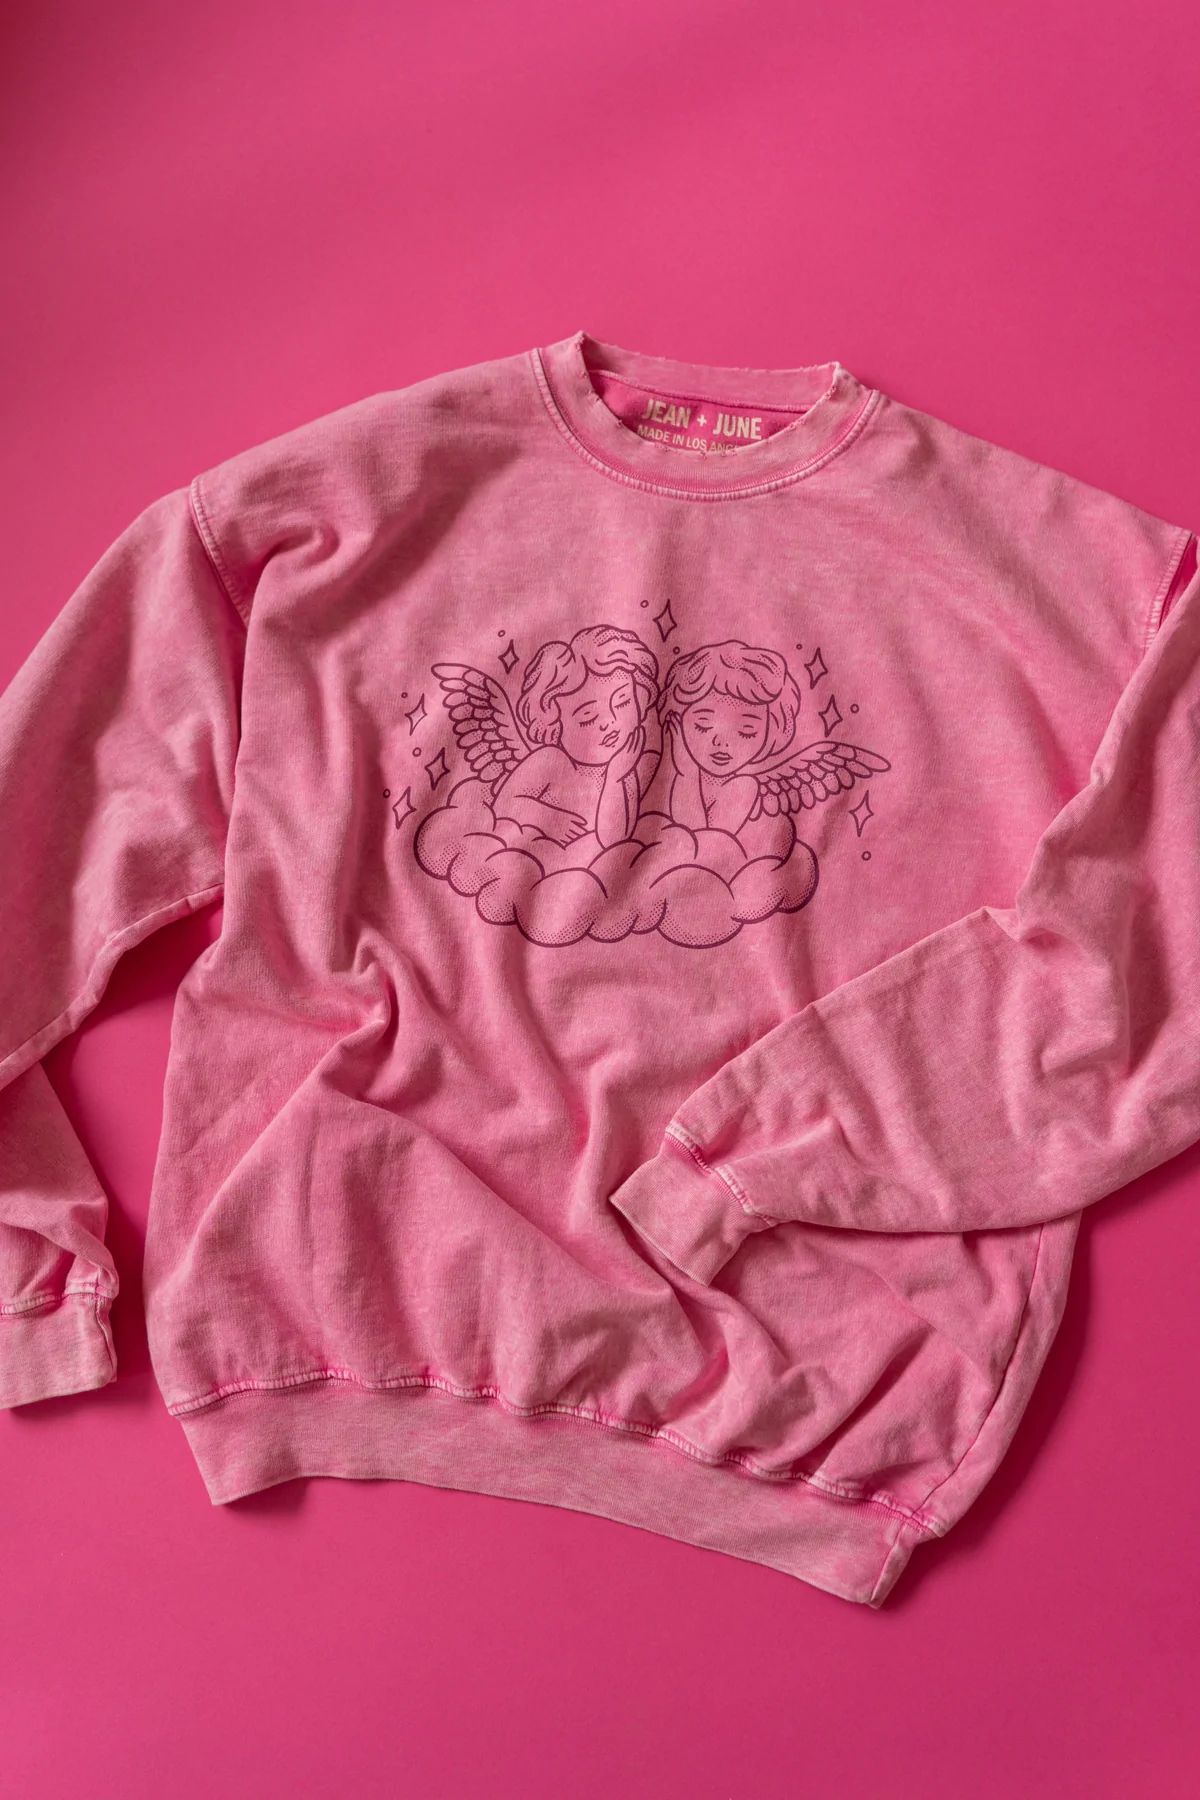 Cupid Women's Sweatshirt in Pink | Jean and June